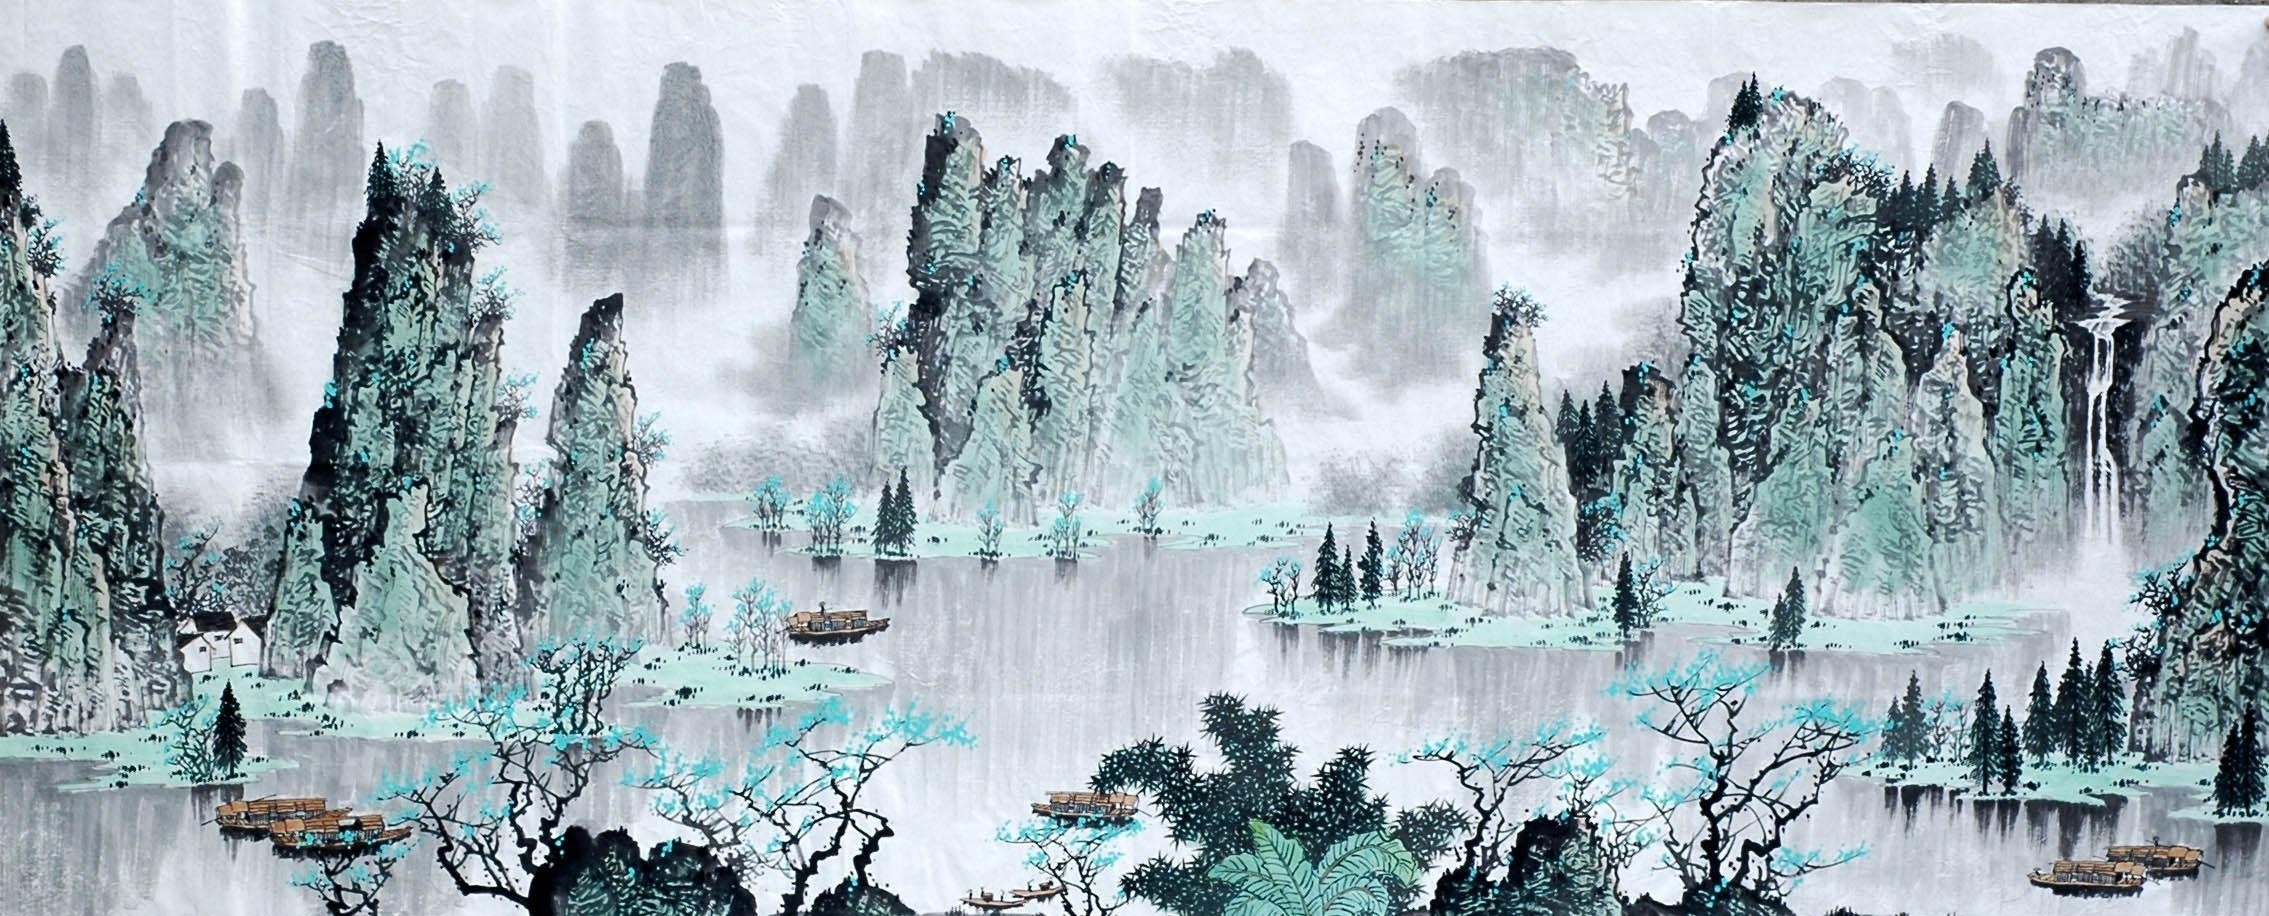 Chinese Landscape Painting - CNAG010058